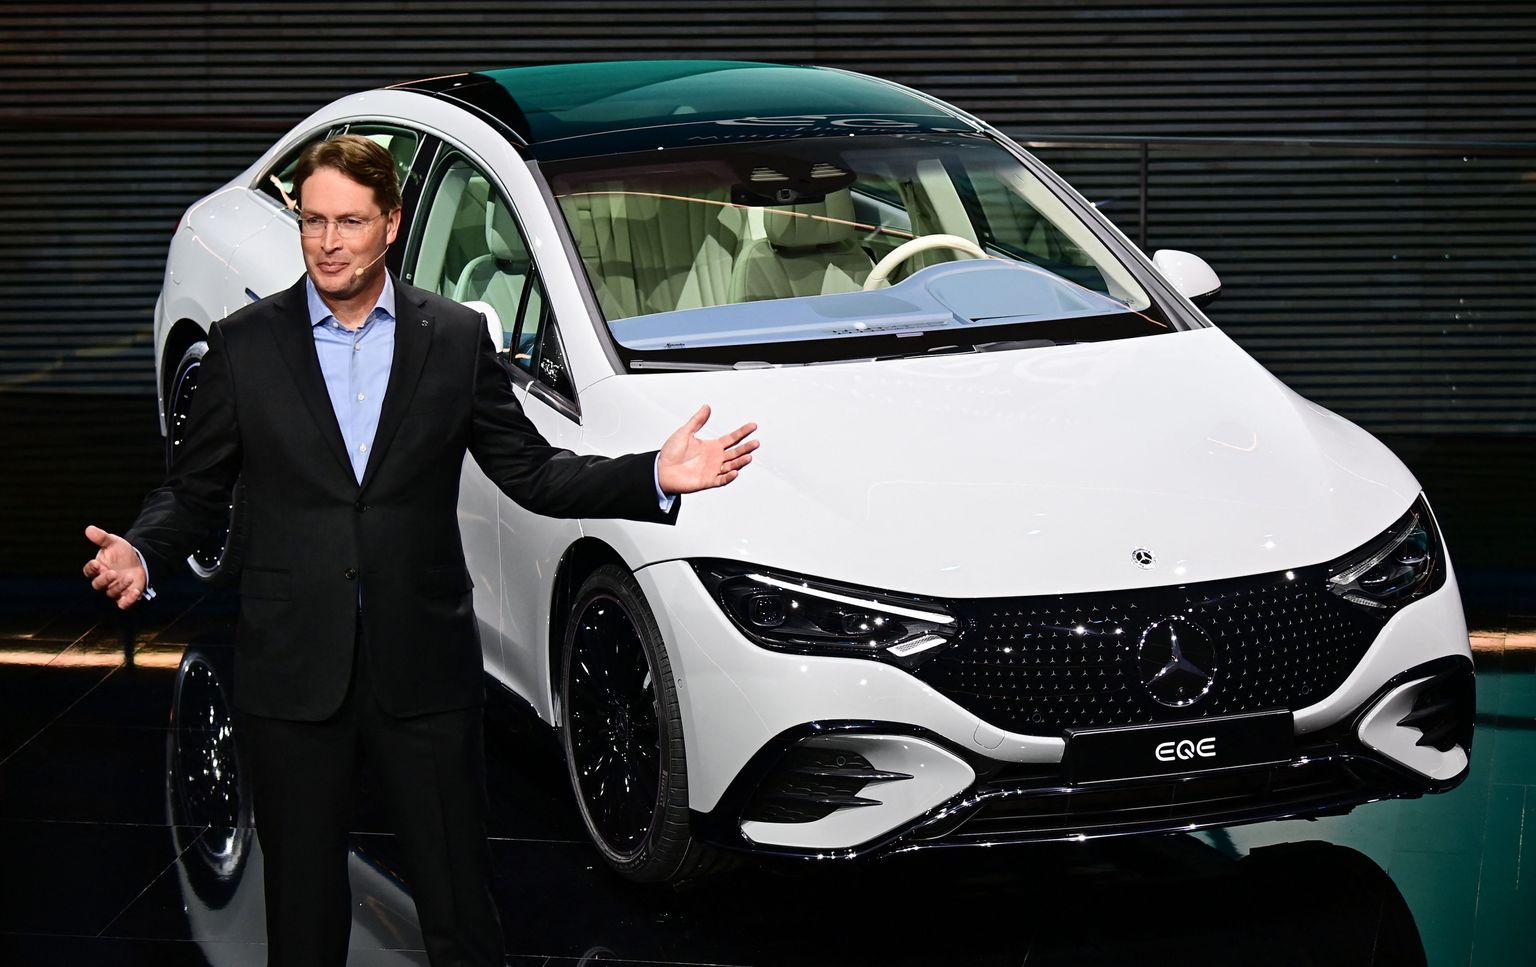 Daimleri juht Ola Kaellenius tutvustas septembri alguses Müncheni messil uut Mercedes-Benzi mudelit EQE.